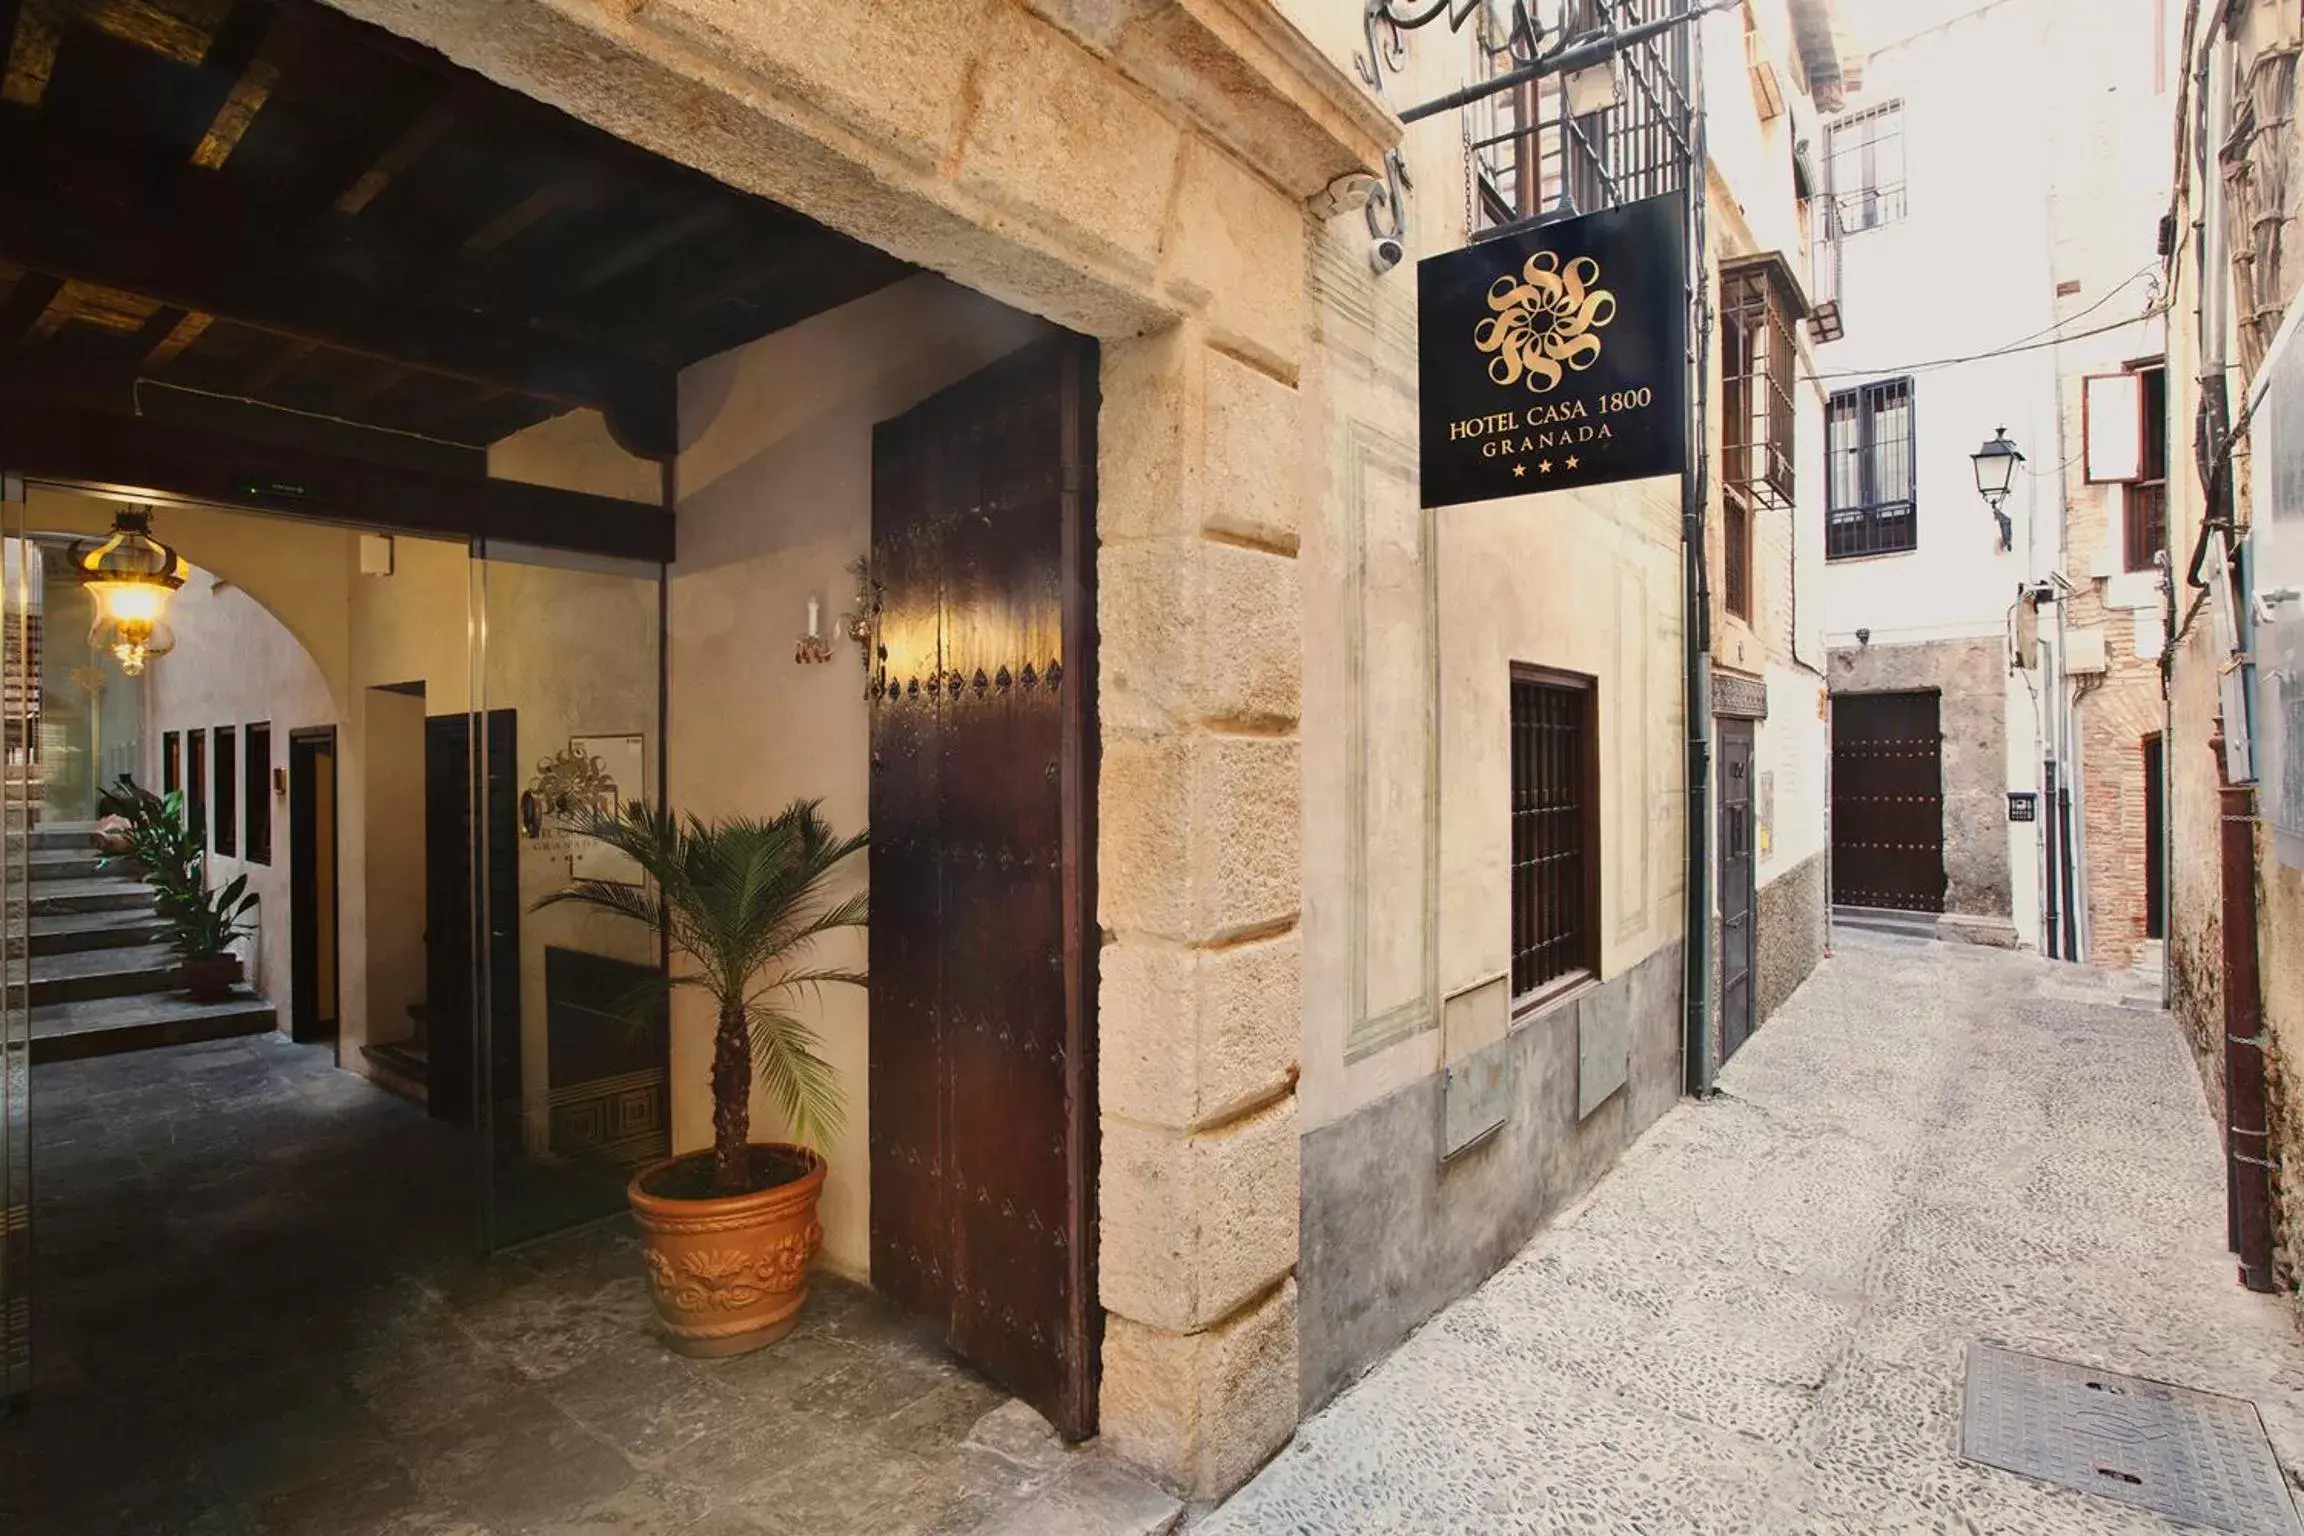 Property building in Hotel Casa 1800 Granada